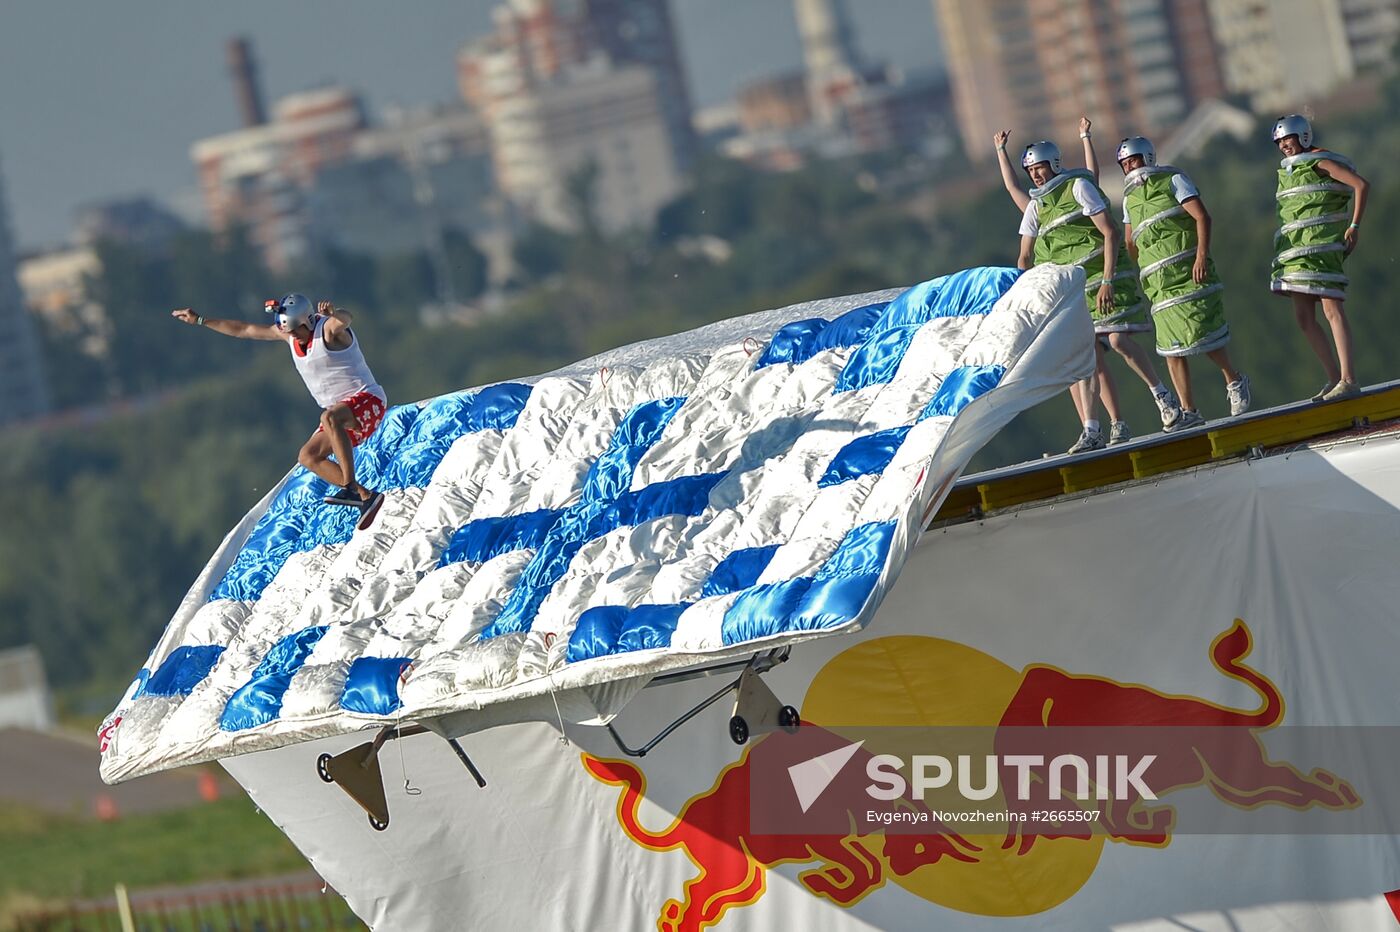 Red Bull Flugtag 2015 festival